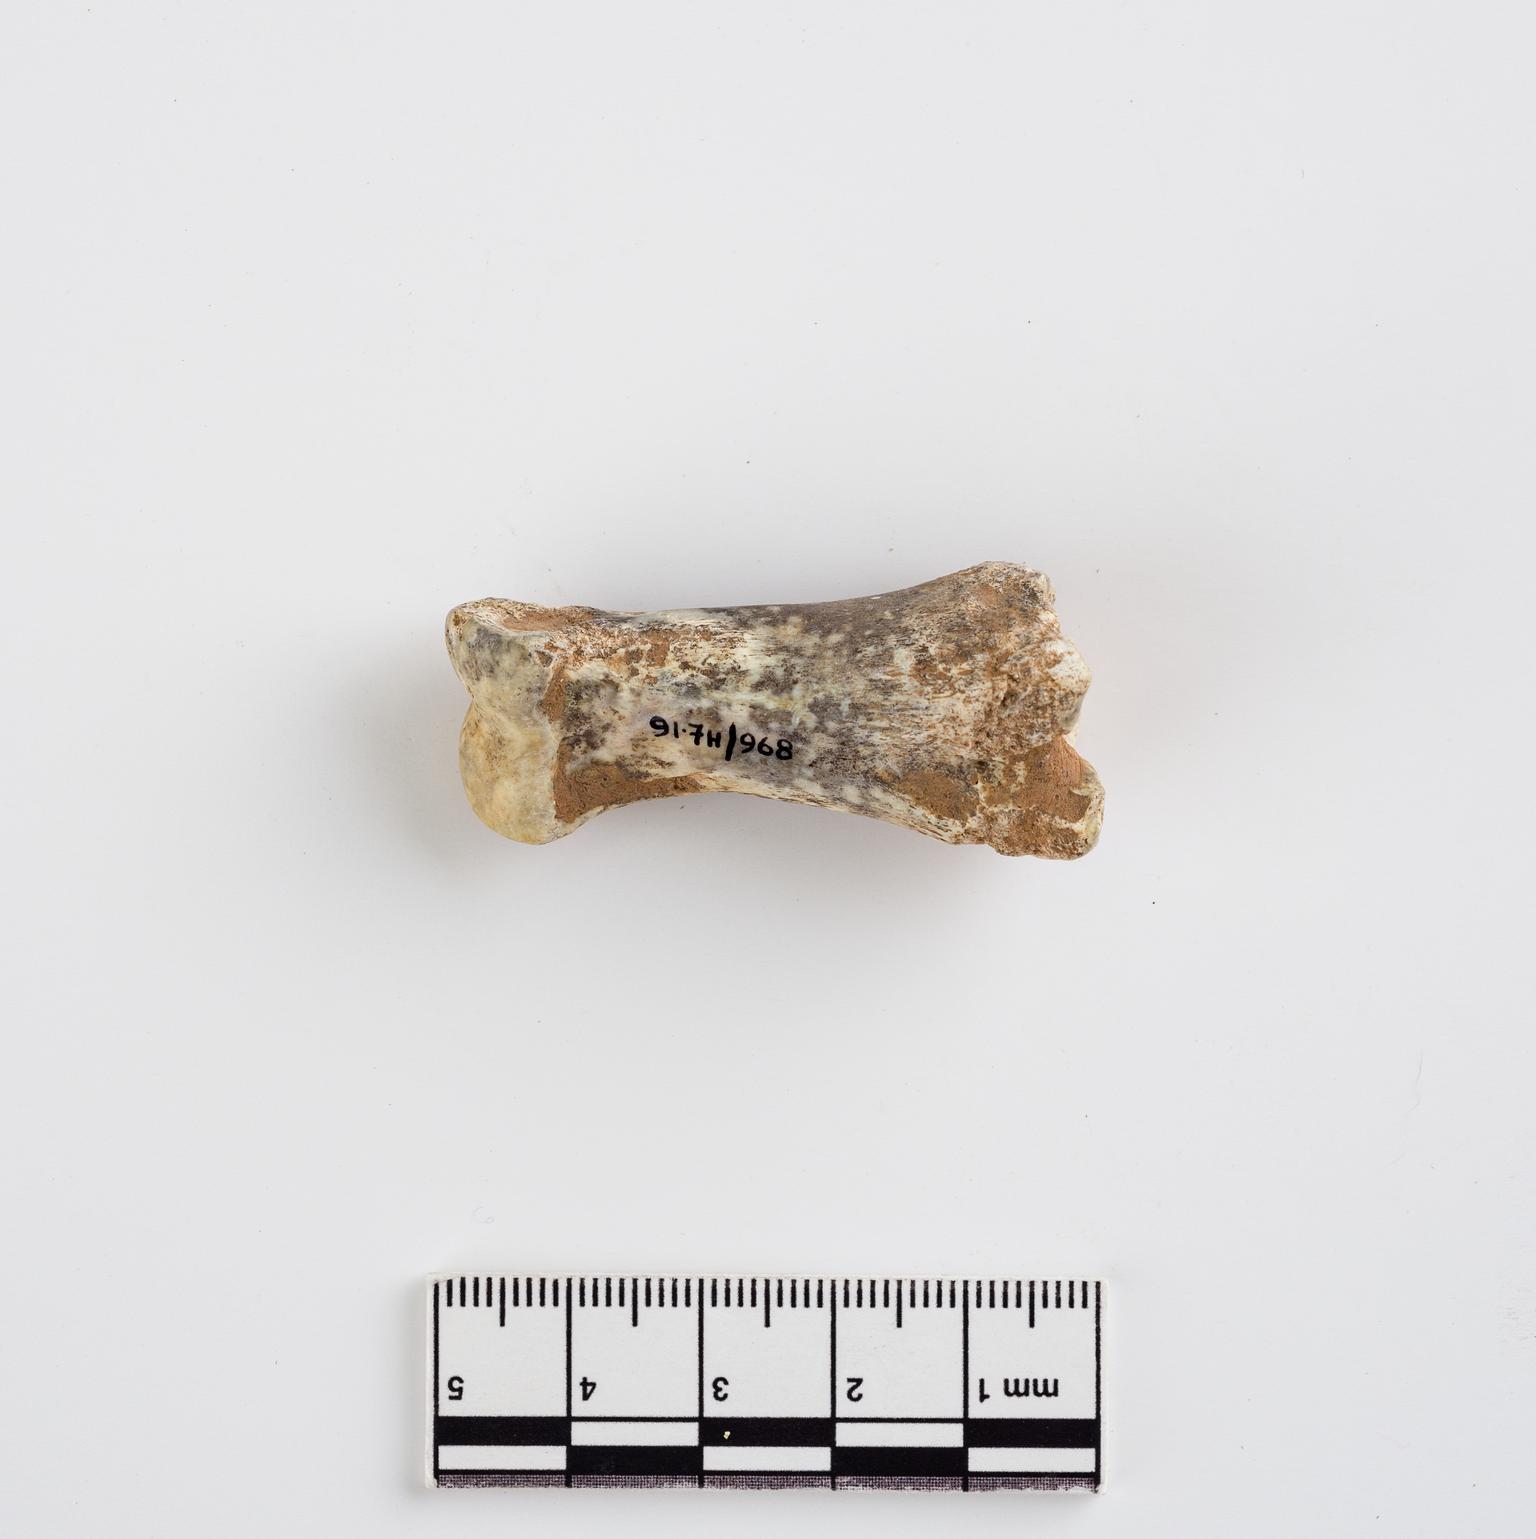 Pleistocene reindeer bone